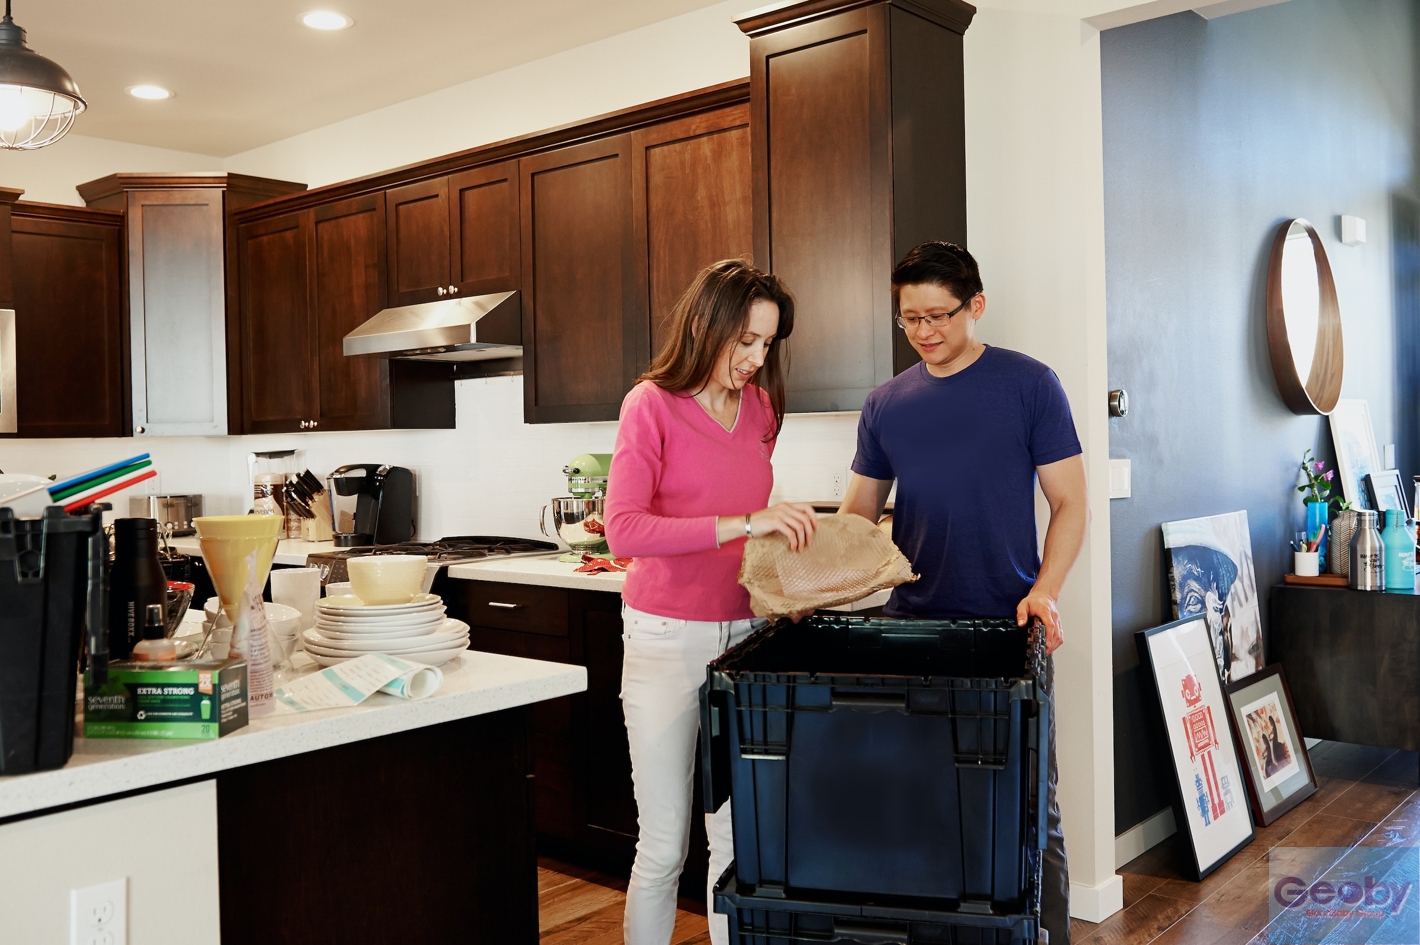 Из этой статьи вы узнаете, как правильно упаковать мебель и другие вещи перед переездом, чтобы сделать его менее хлопотным.